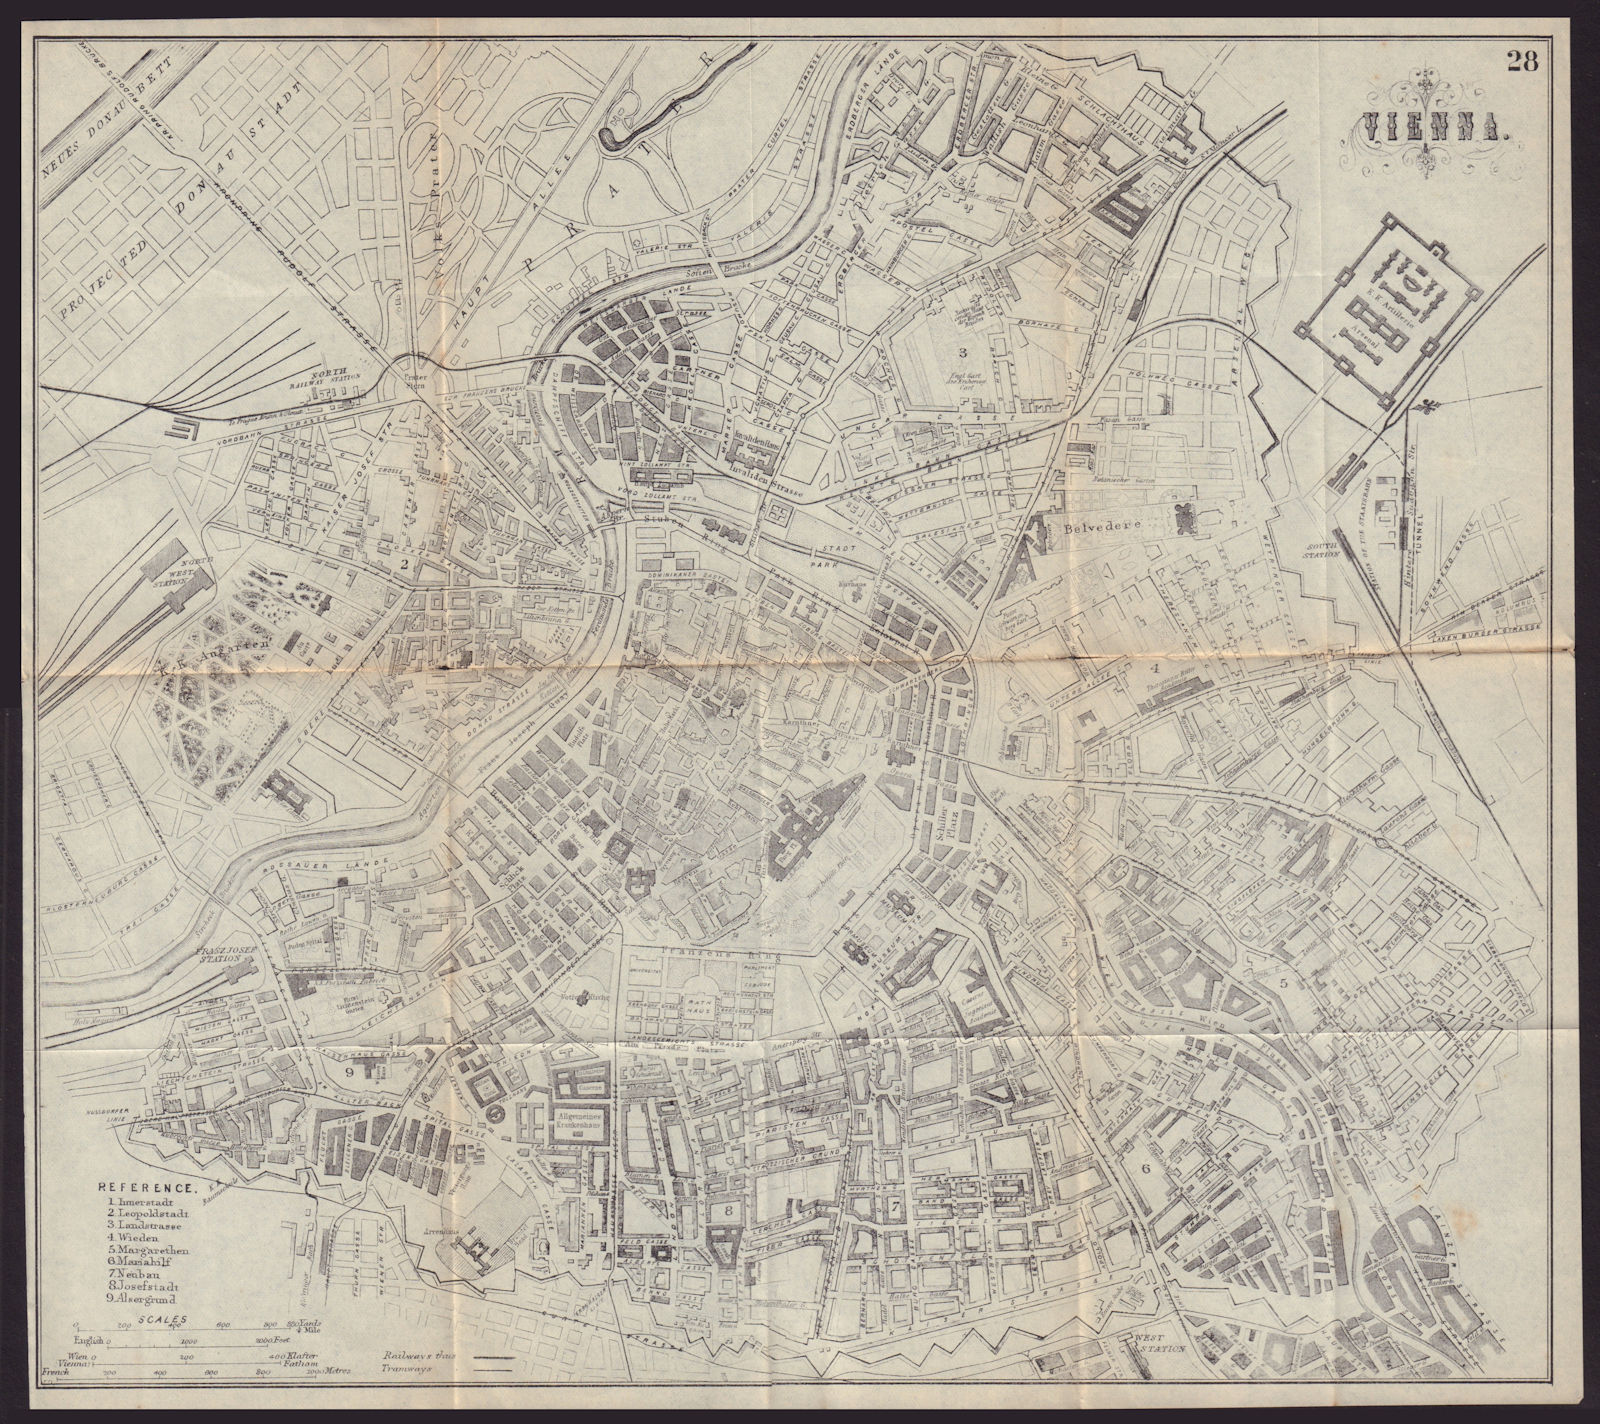 VIENNA WIEN antique town plan city map. Austria. BRADSHAW 1893 old